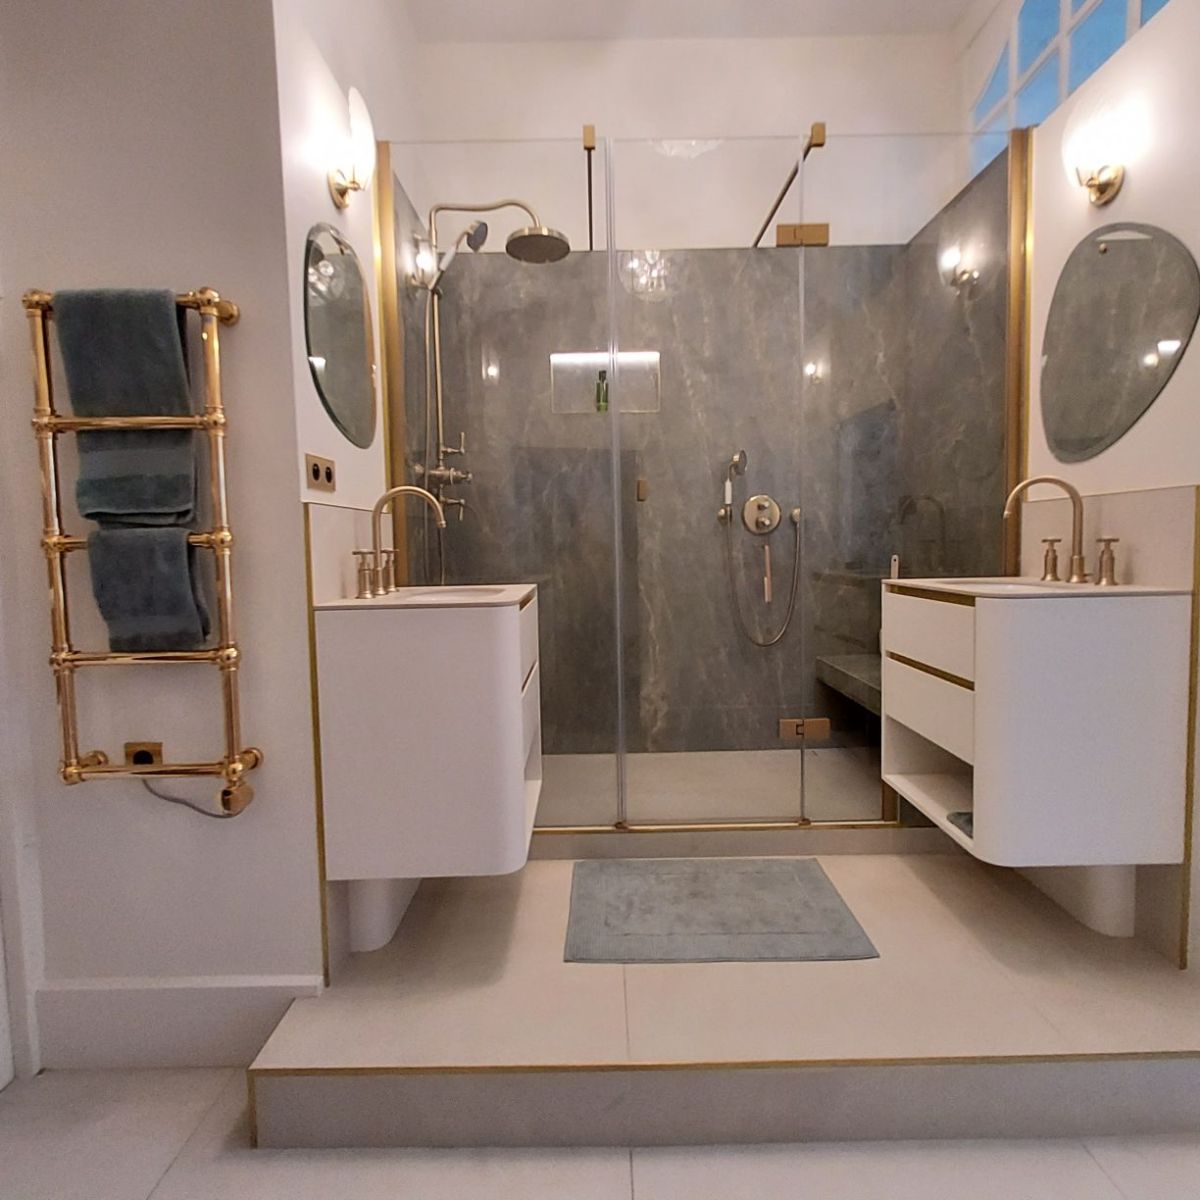 rénovation et création salle de bains double vasque dos à dos espace douche avec banquette appartement centre historique rennes